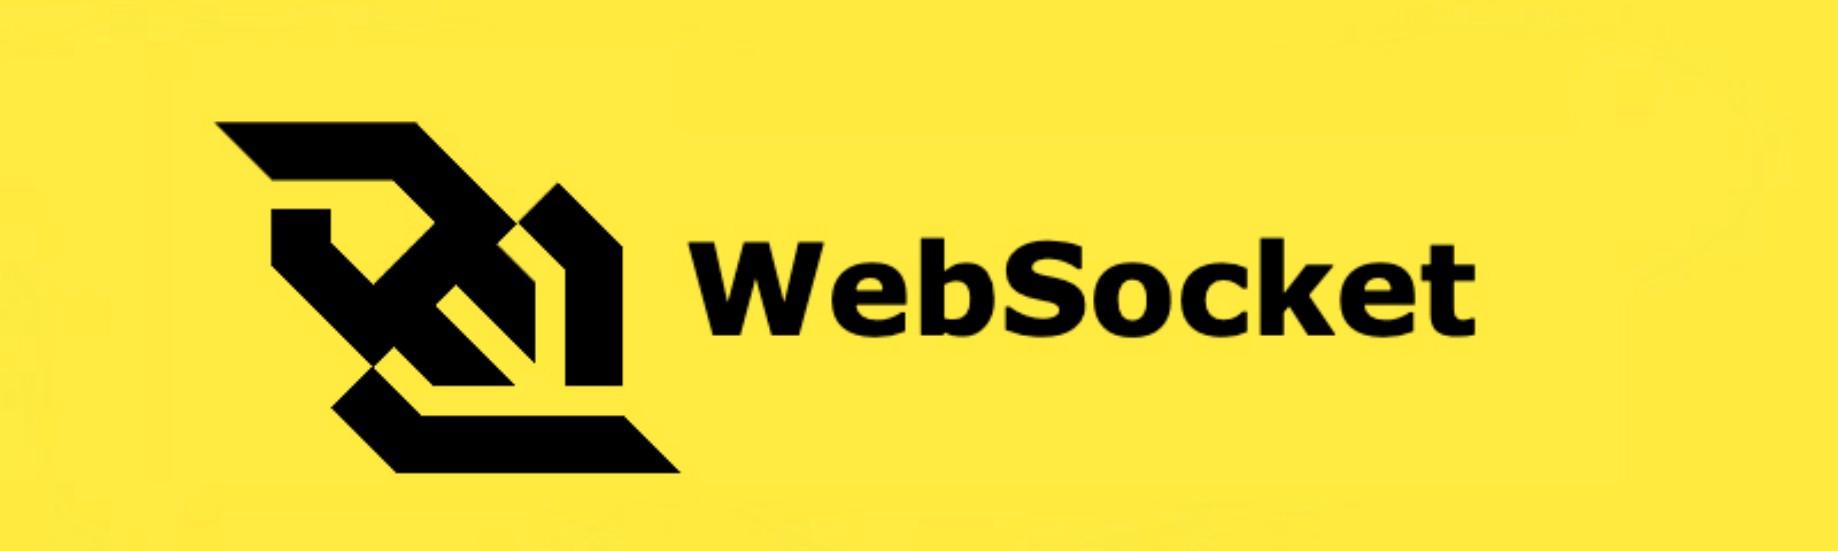 WebSocket Logo - What is WebSocket?